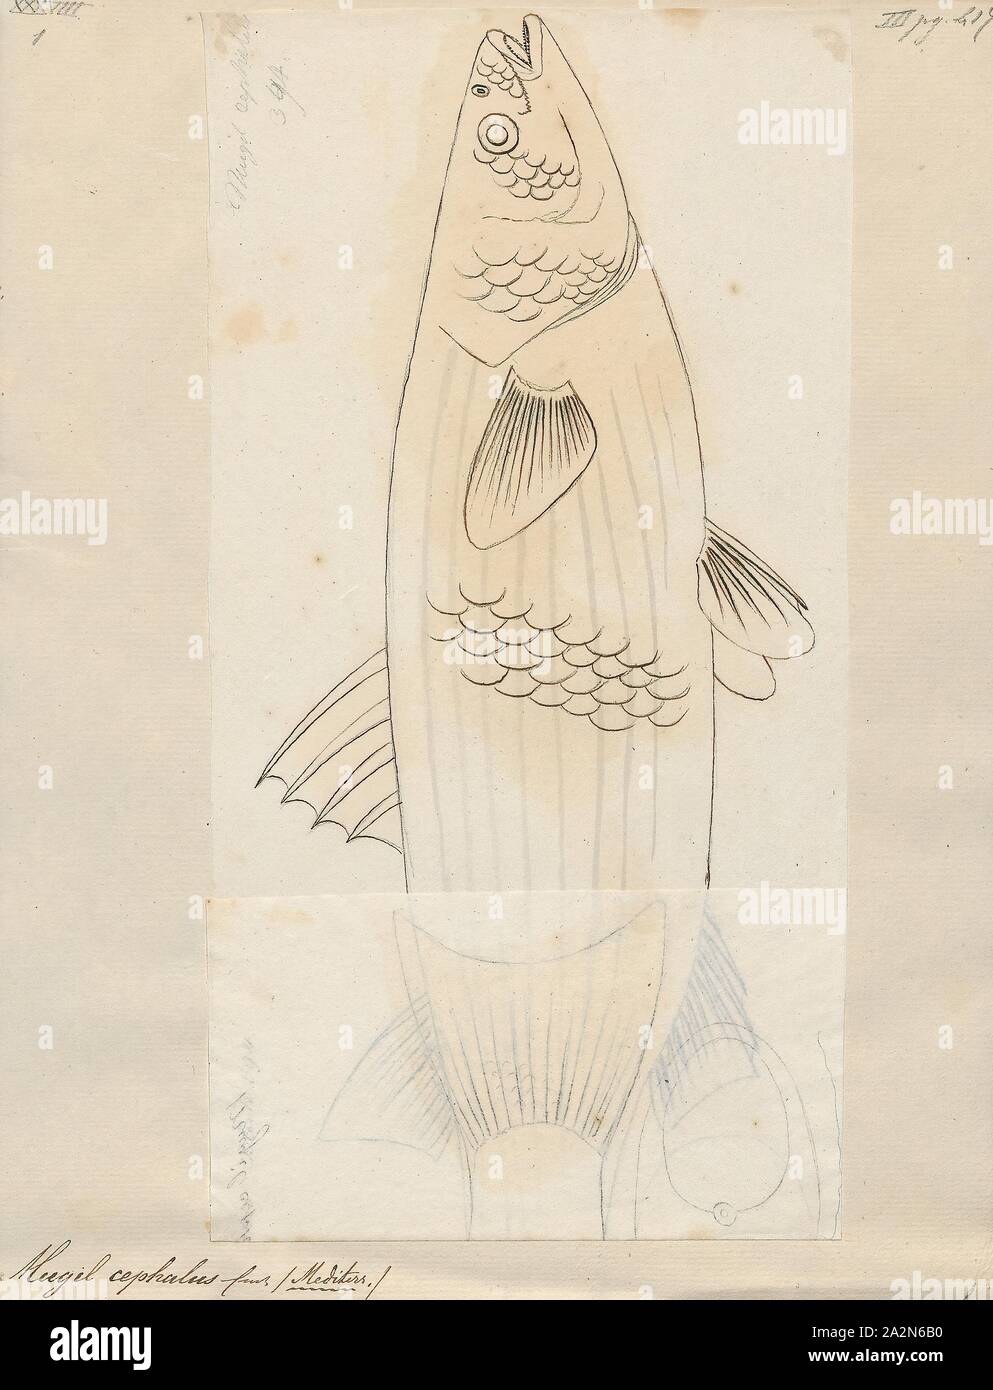 Mugil cefalo, stampa il flathead cefalo (Mugil cefalo) è un alimento importante specie ittiche in il muggine famiglia Mugilidae. Si trova nelle zone costiere tropicali e subtropicali di acque in tutto il mondo. La sua lunghezza è tipicamente da 30 a 75 centimetri (12 a 30). È conosciuto con numerosi nomi inglesi, comprese le triglie di flathead, striped mullet (US, American pesca nome società), nero triglie, bully bottarga di muggine comune, Cefali Triglia di mare e di triglie, tra gli altri., 1700-1880 Foto Stock